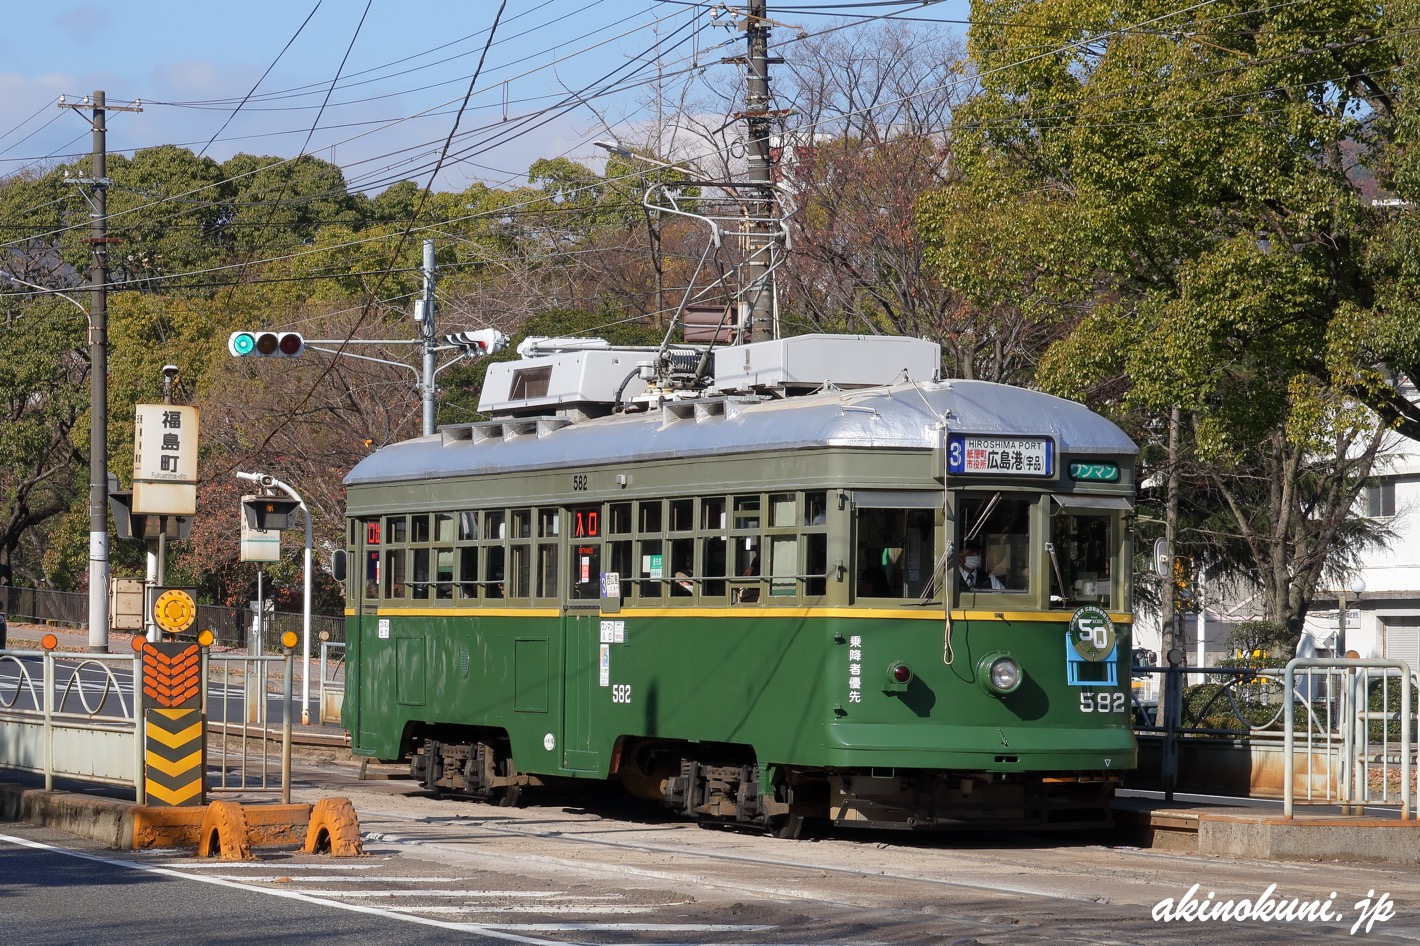 広島電鉄 神戸市電から譲り受けた車両 582号